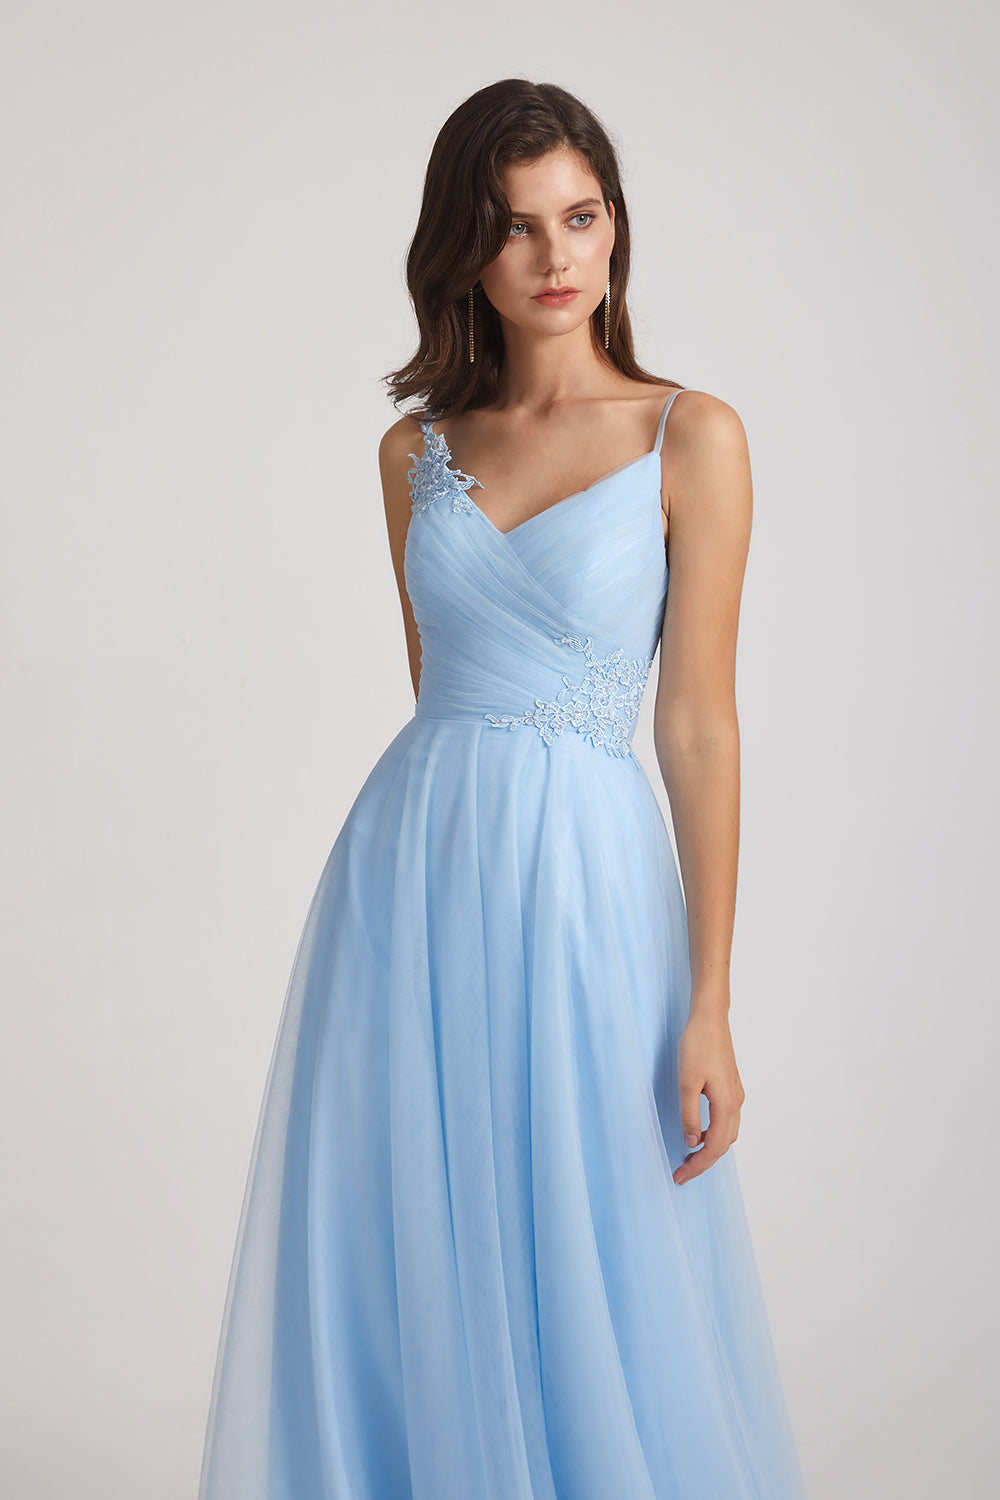 light blue Tulle Bridesmaid Dresses